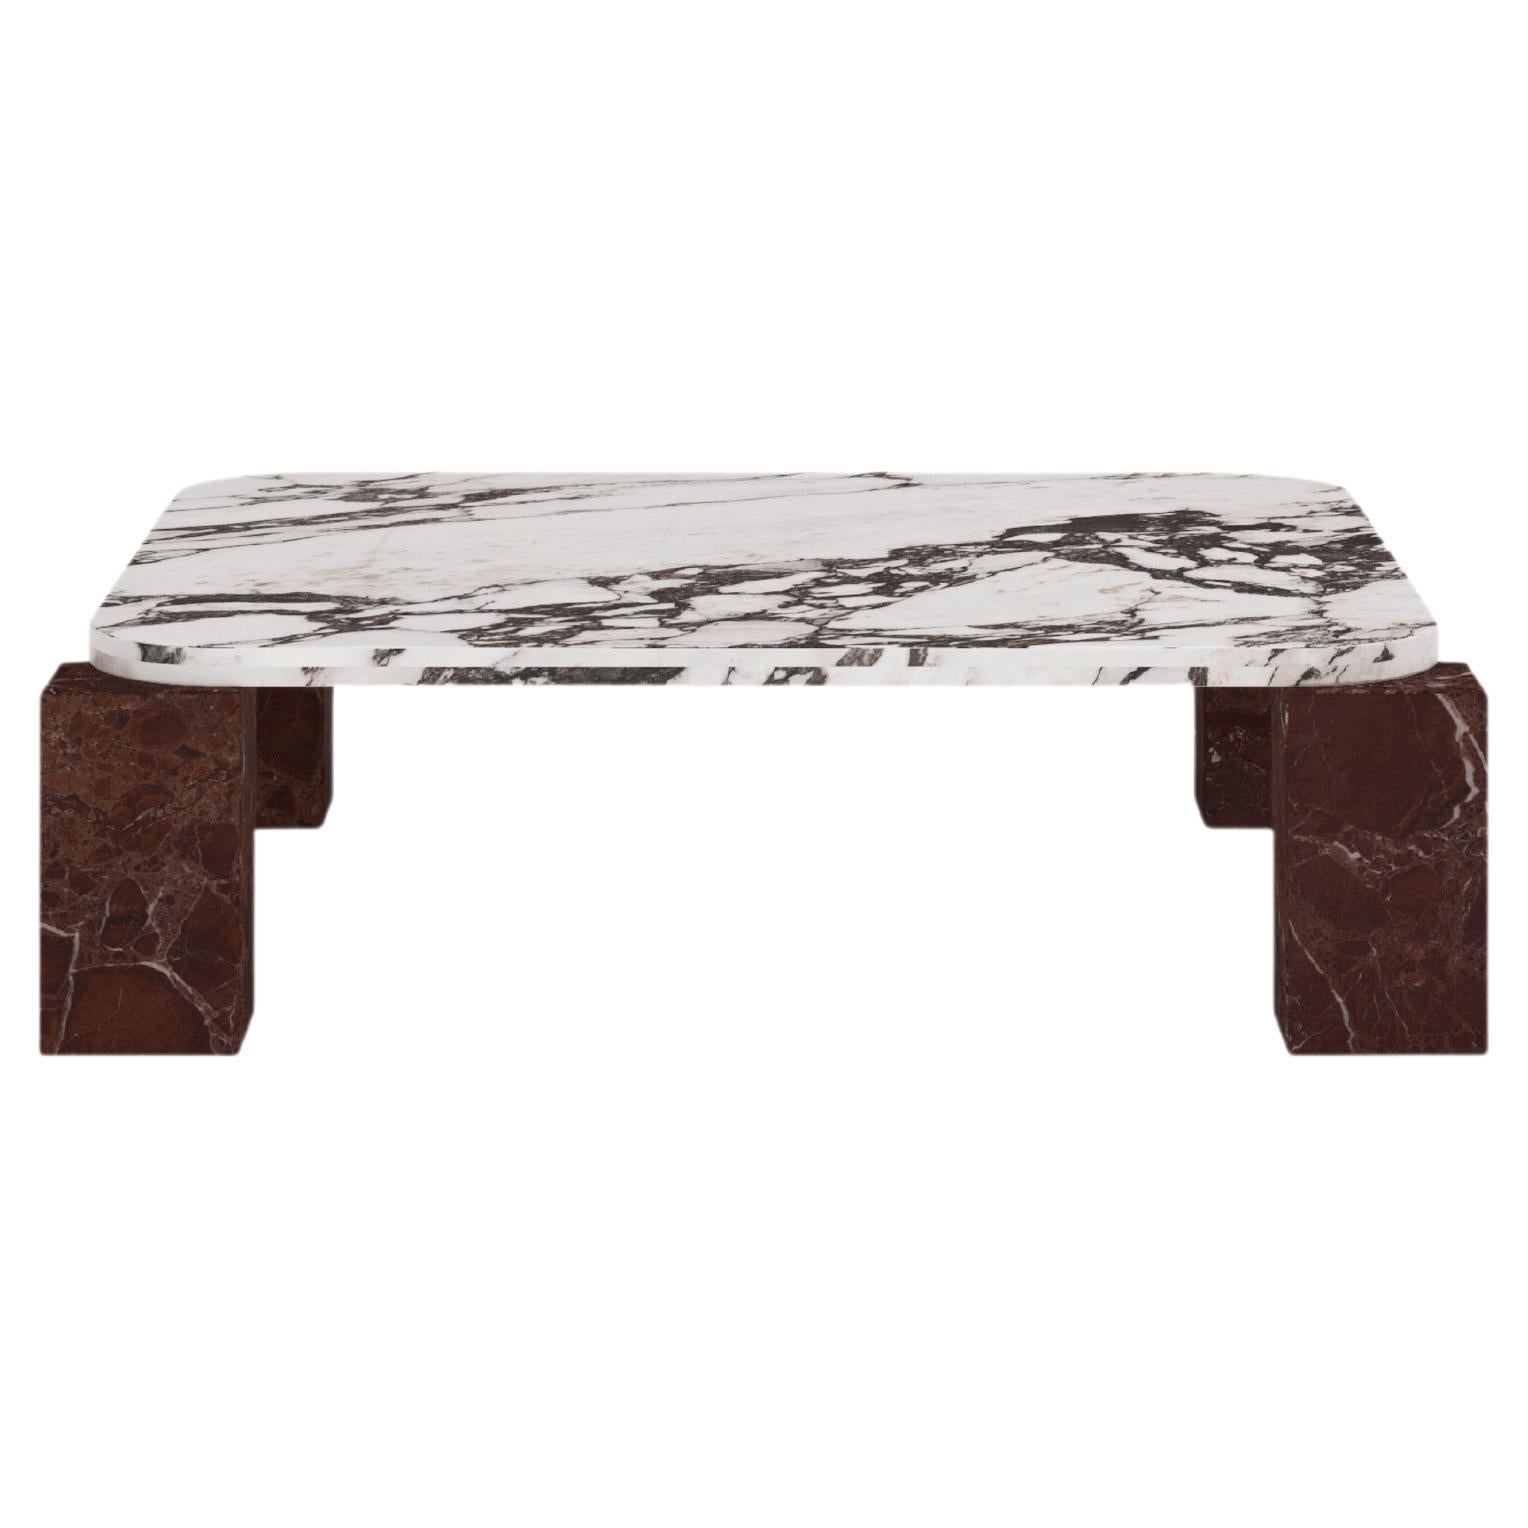 FORM(LA) Cubo Square Coffee Table 56”L x 56"W x 14”H Viola & Rosso Marble